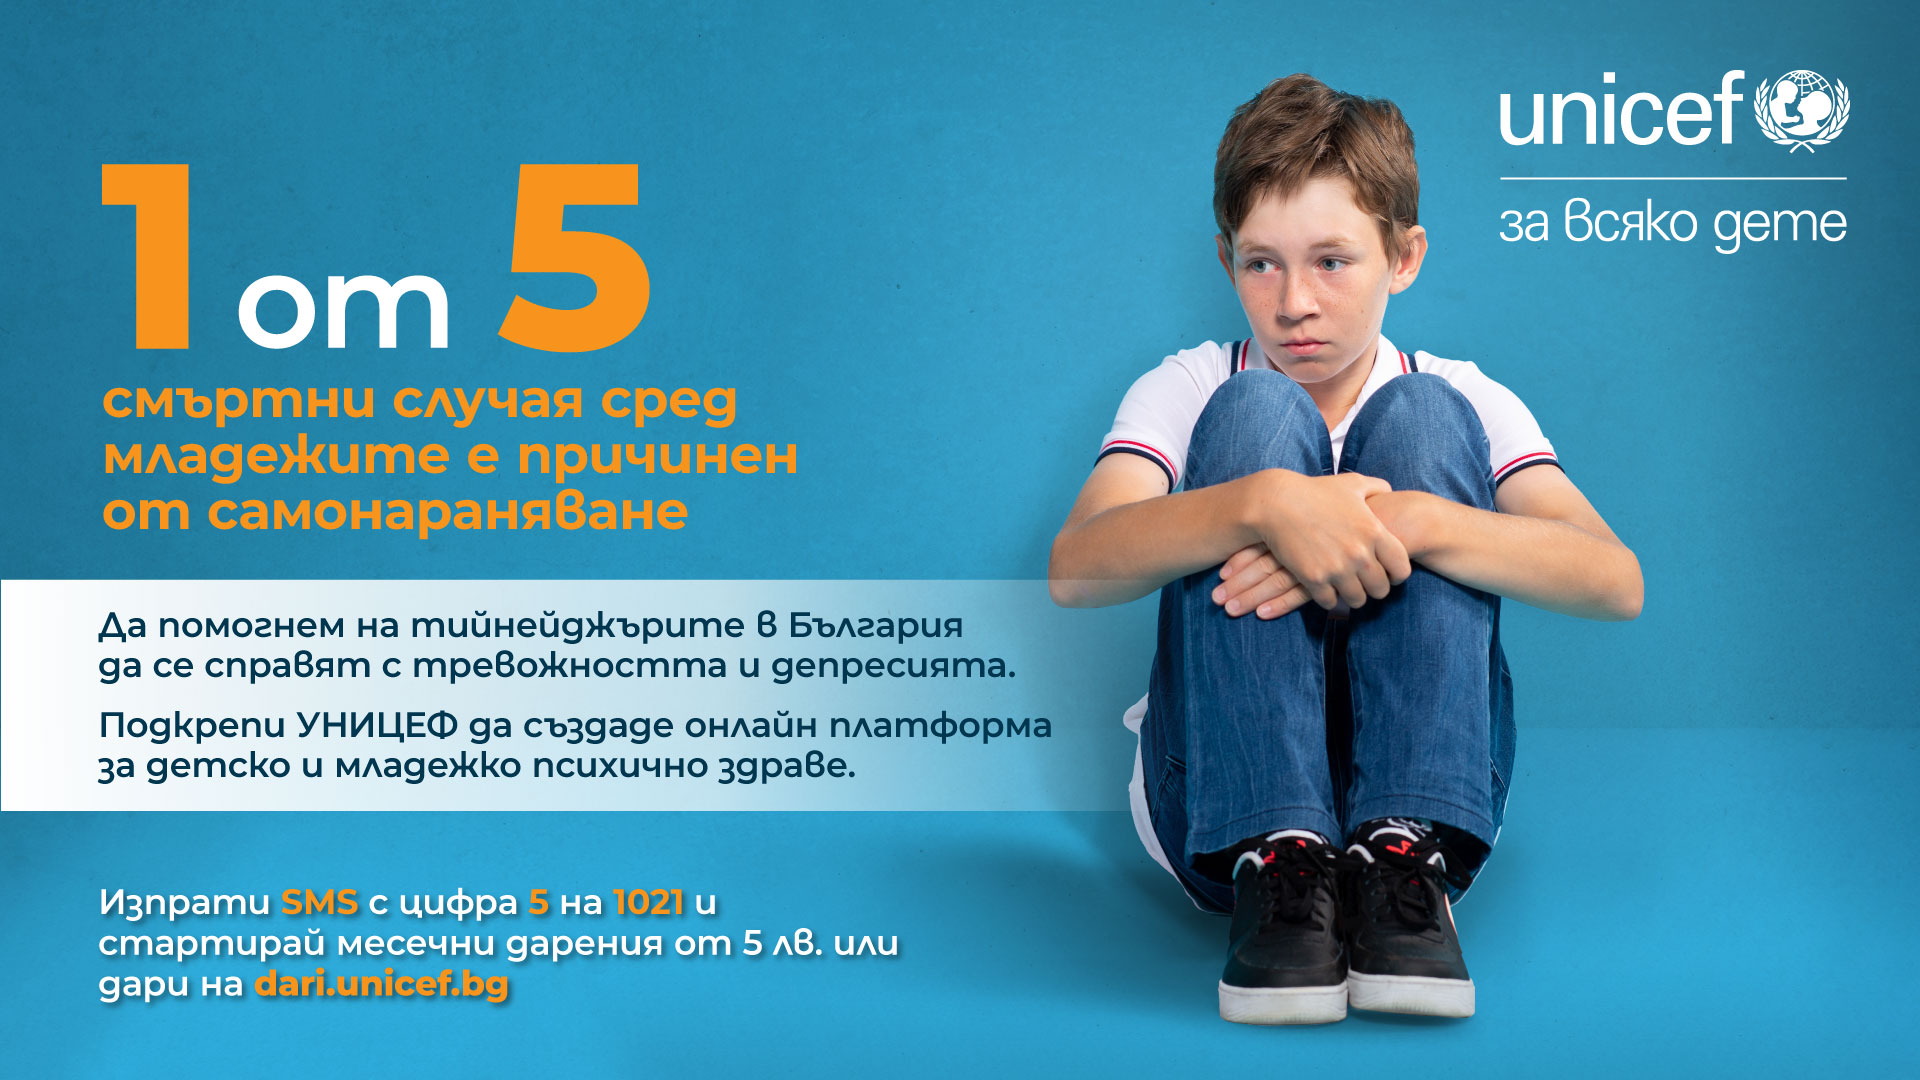 УНИЦЕФ България: 1 от 5 смъртни случая сред младежите е причинен от самонараняване